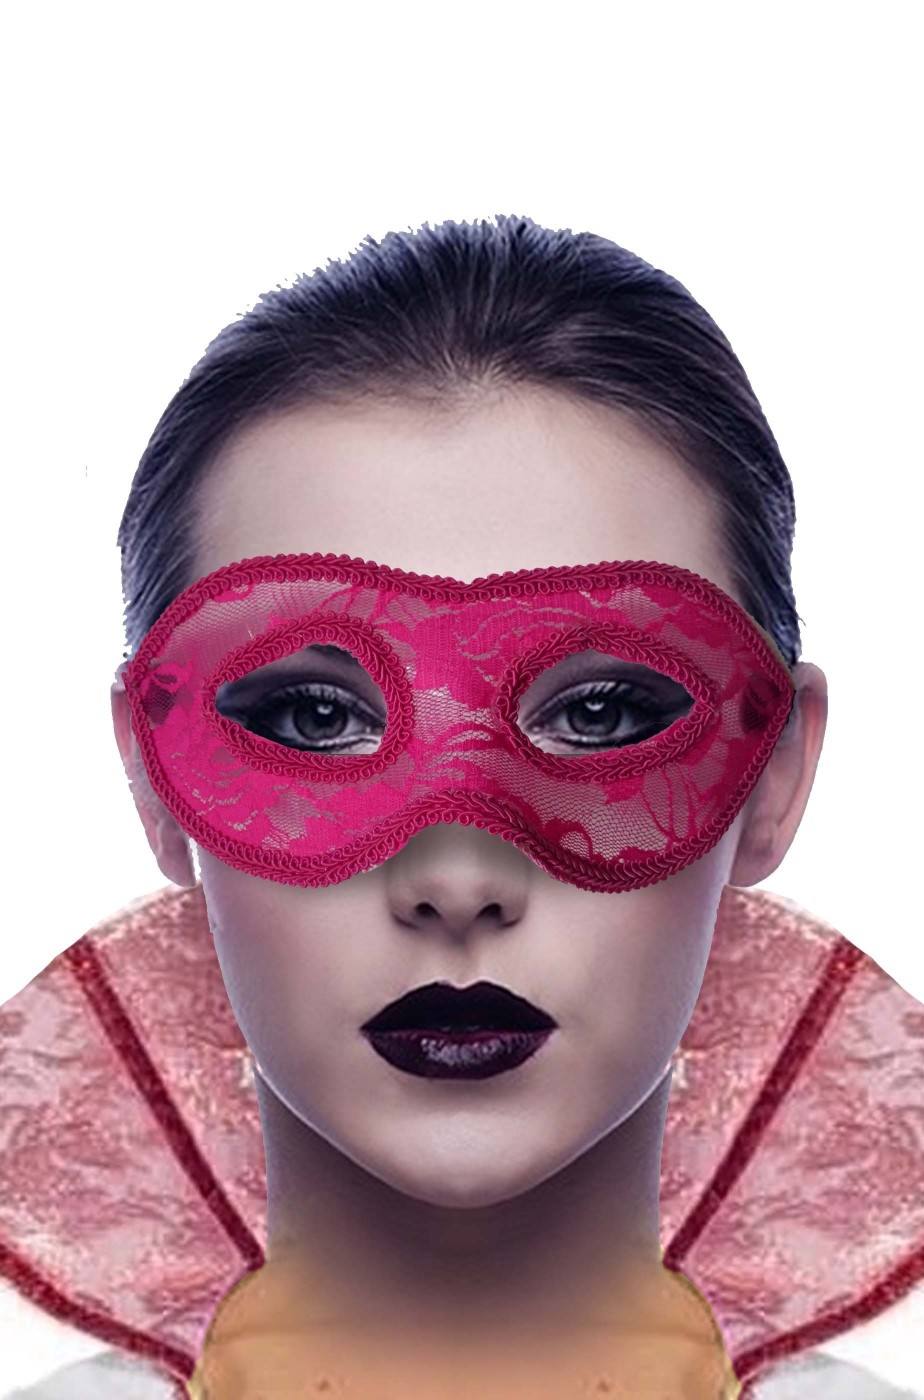 Maschera carnevale veneziano rosa macrame'